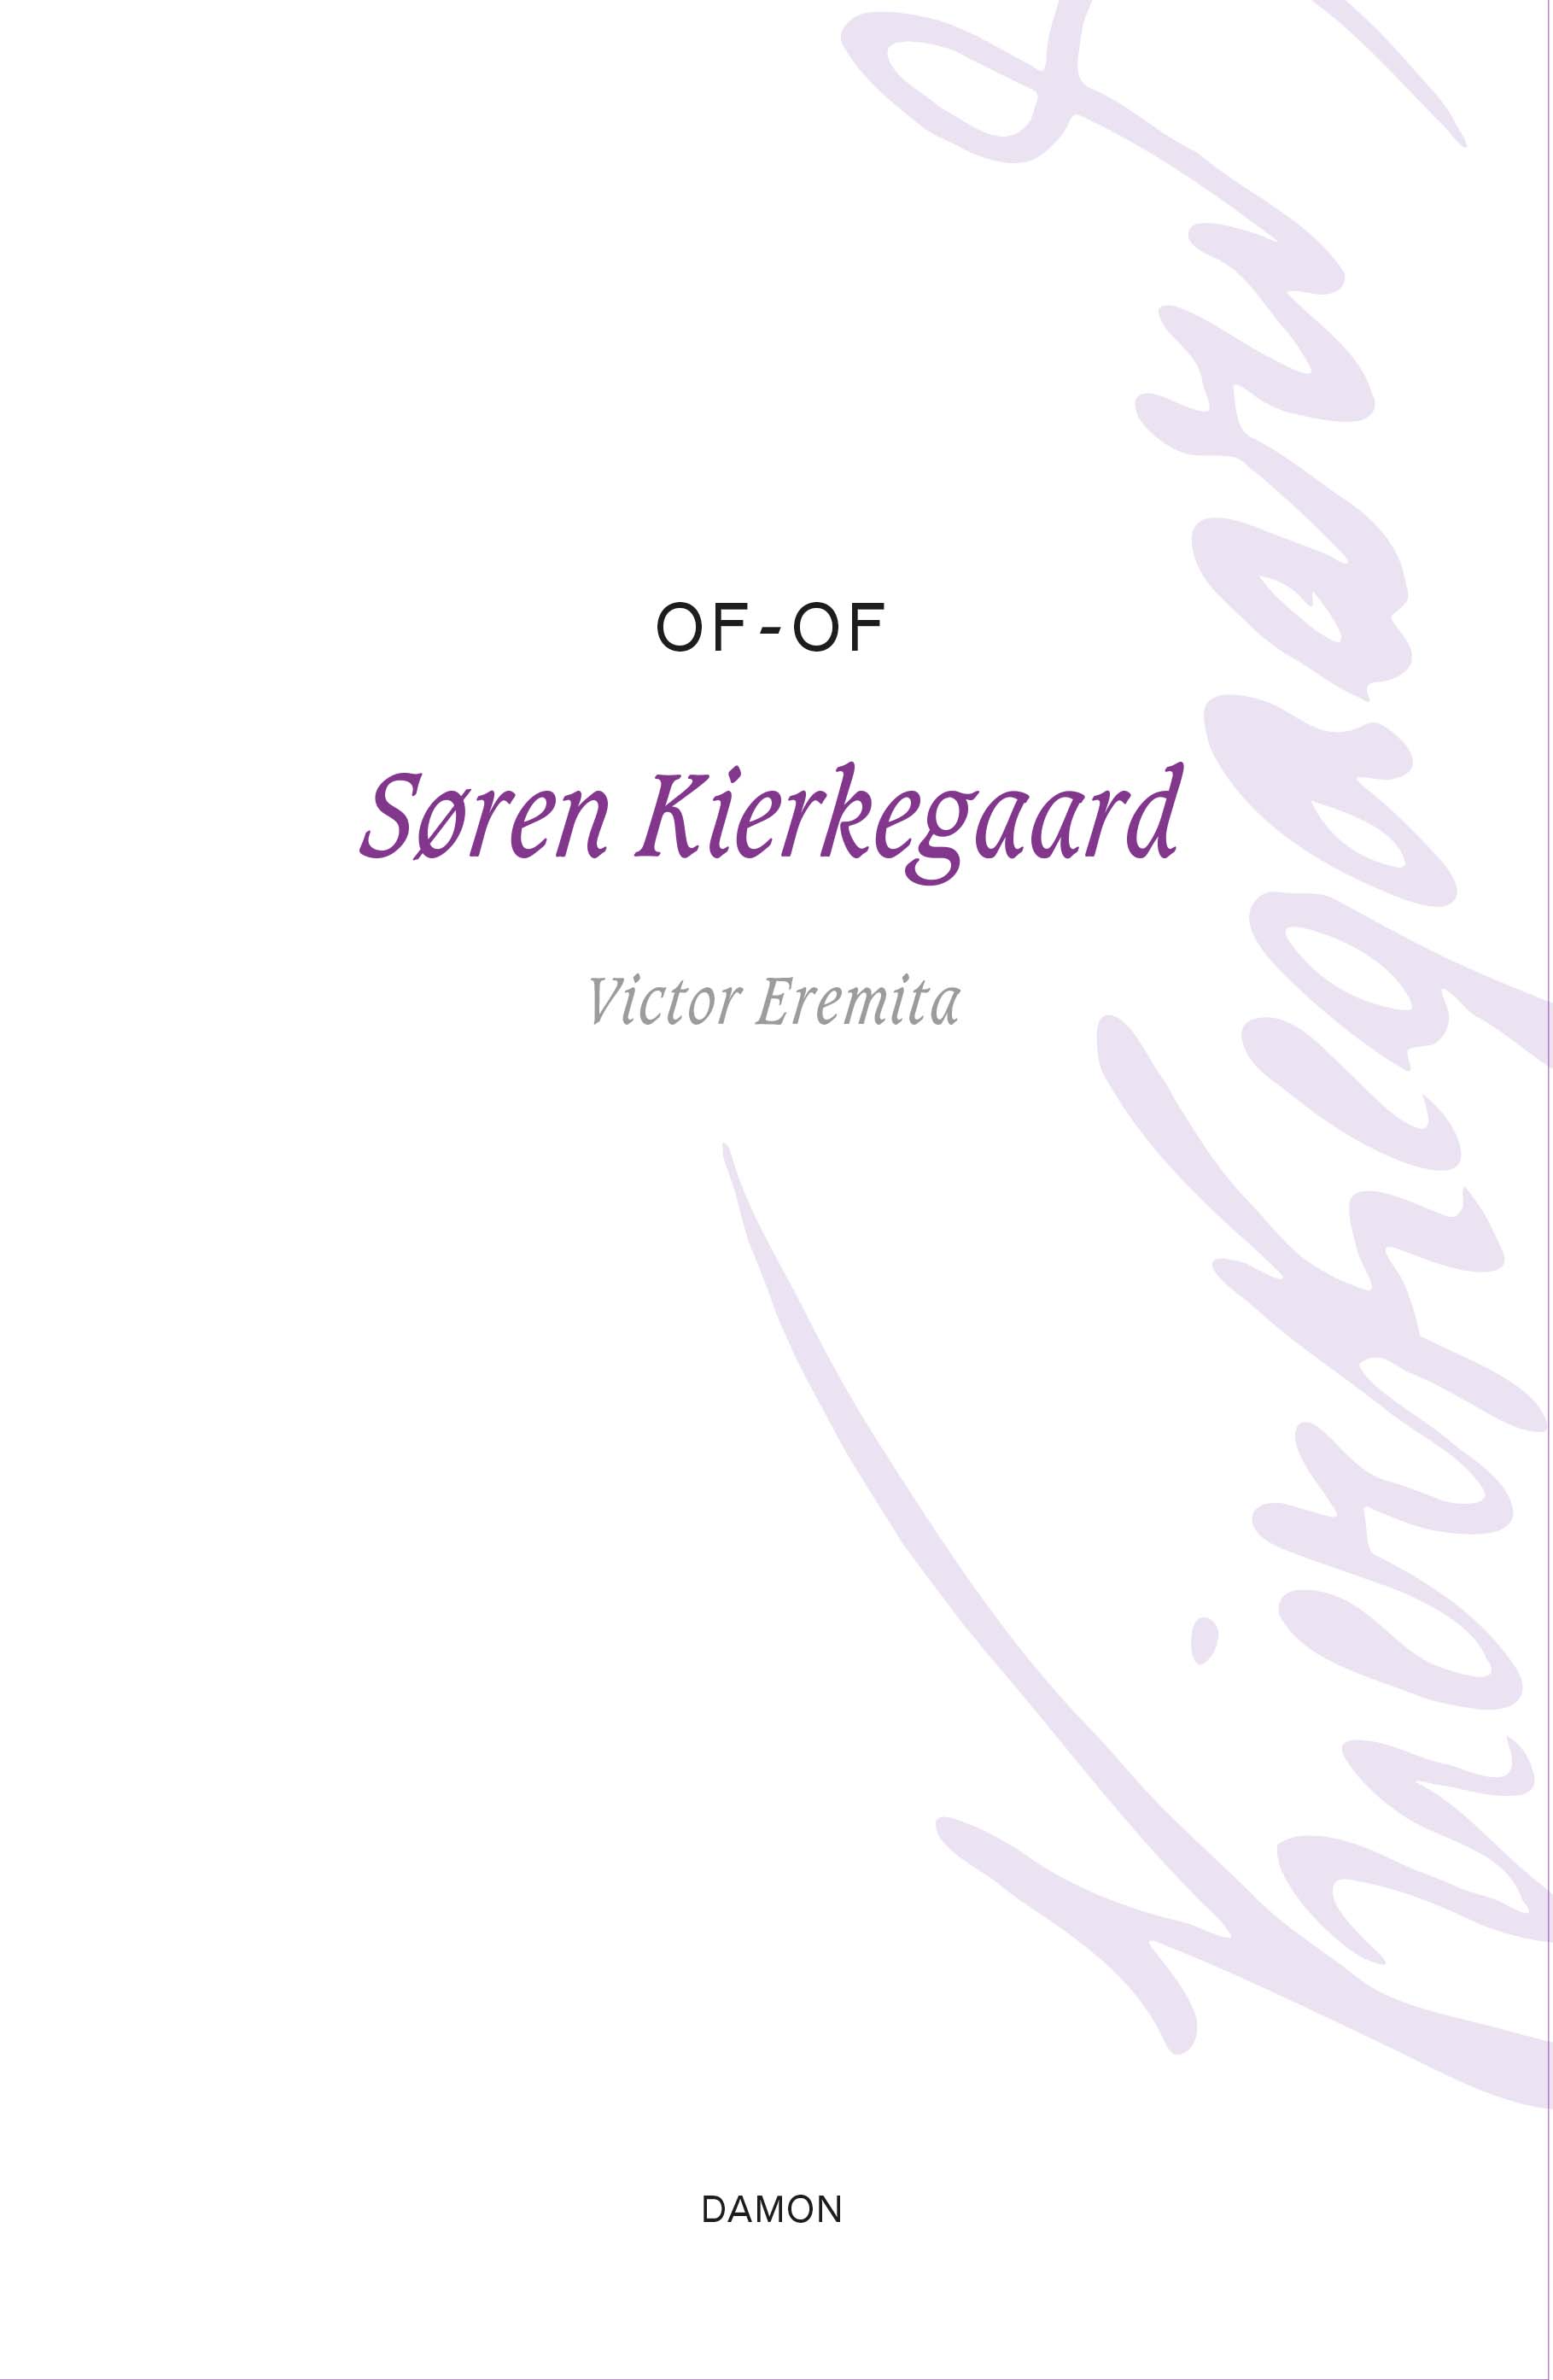 Verschenen hét hoofdwerk van Søren Kierkegaard: Of - Of